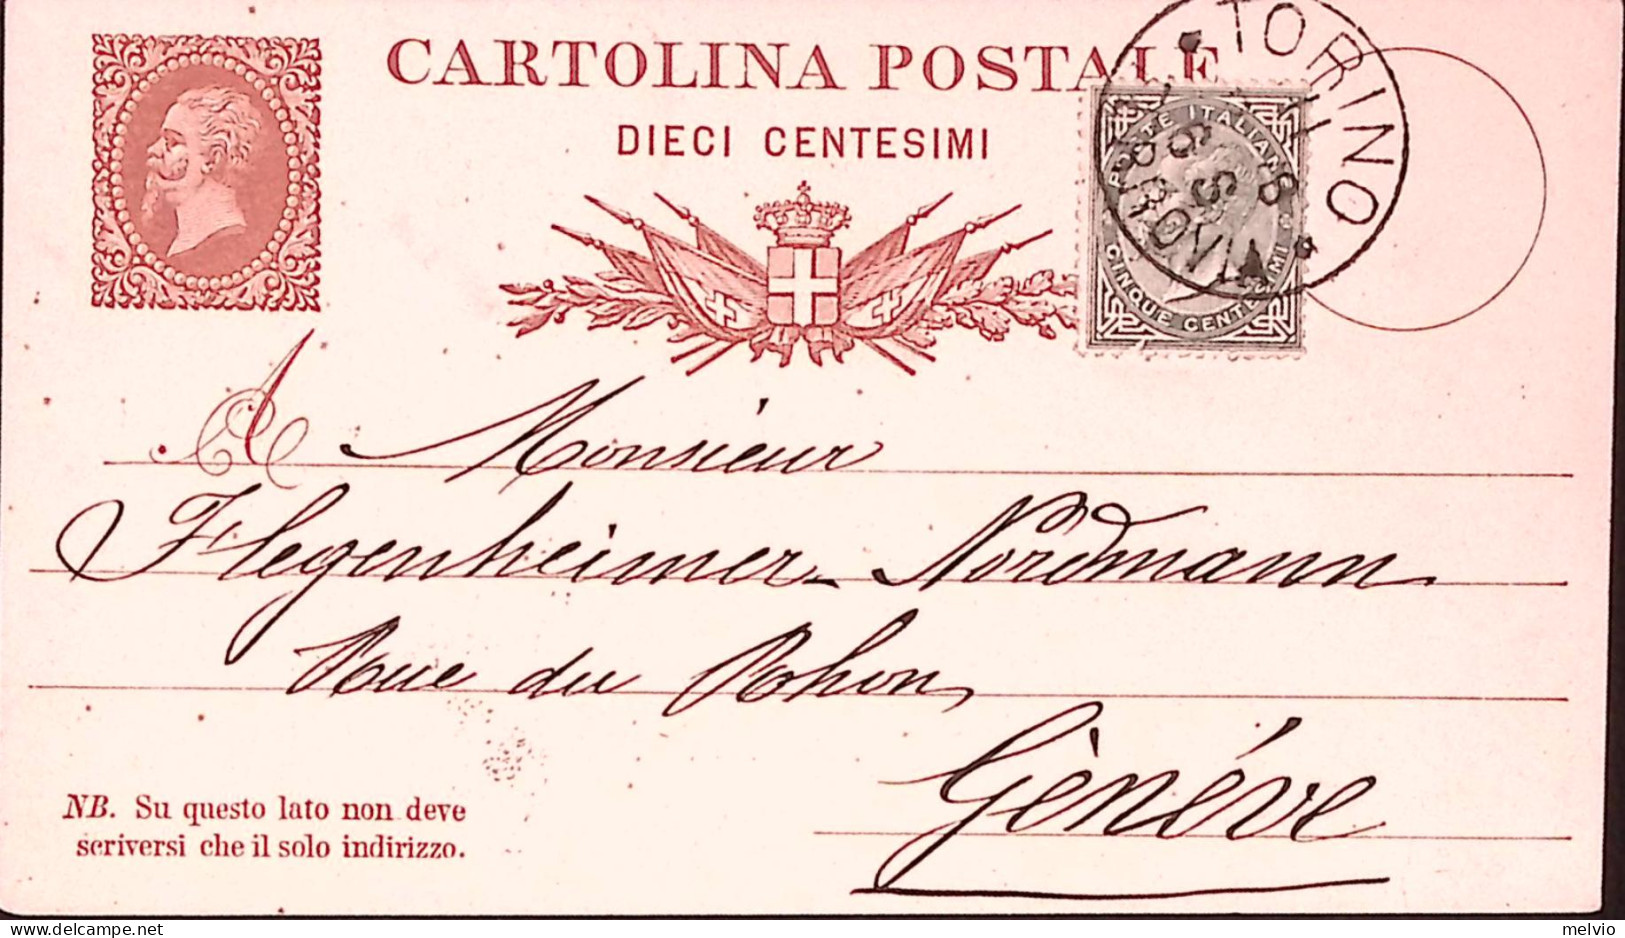 1878-Cartolina Postale C.10 (C4) + Effigie C.5 (18) Torino (11.10) Per La Svizze - Stamped Stationery